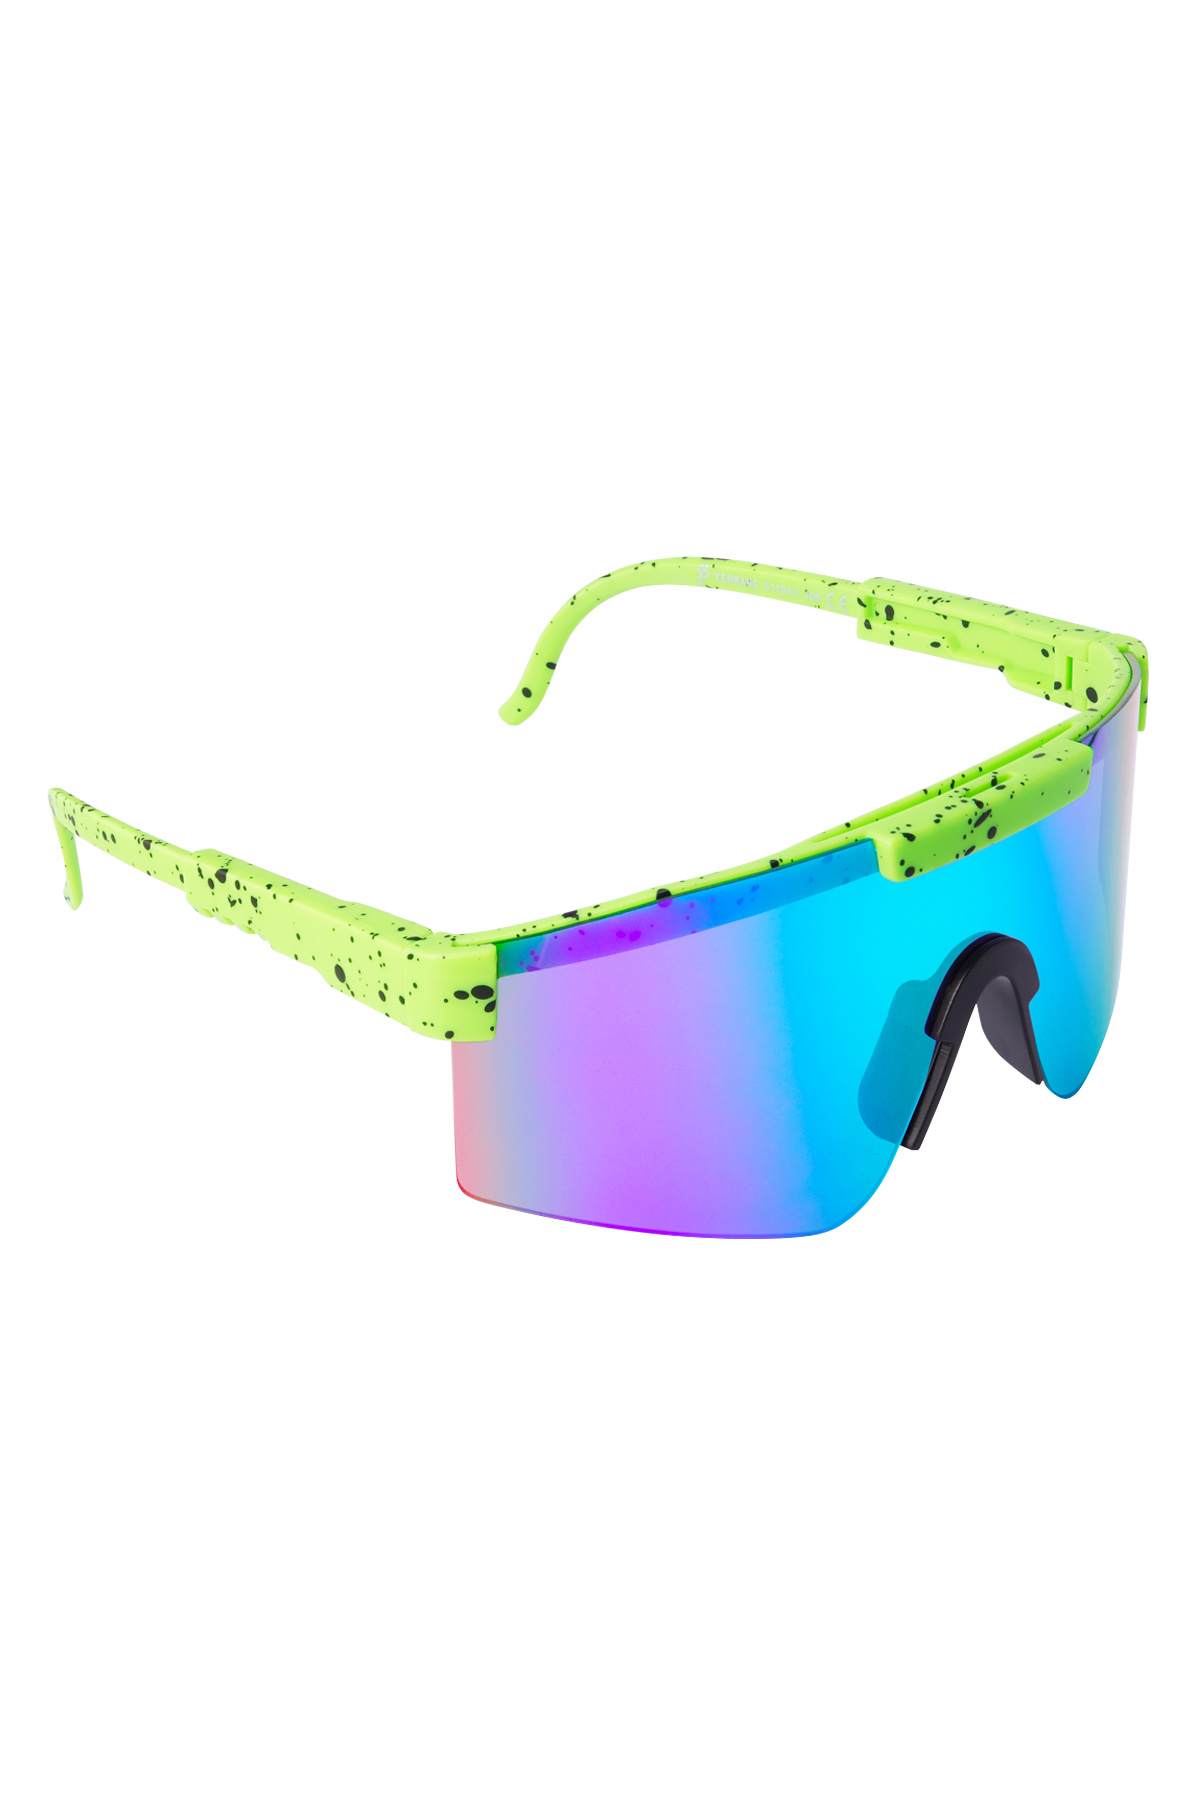 Güneş gözlüğü baskılı renkli lensler - yeşil h5 